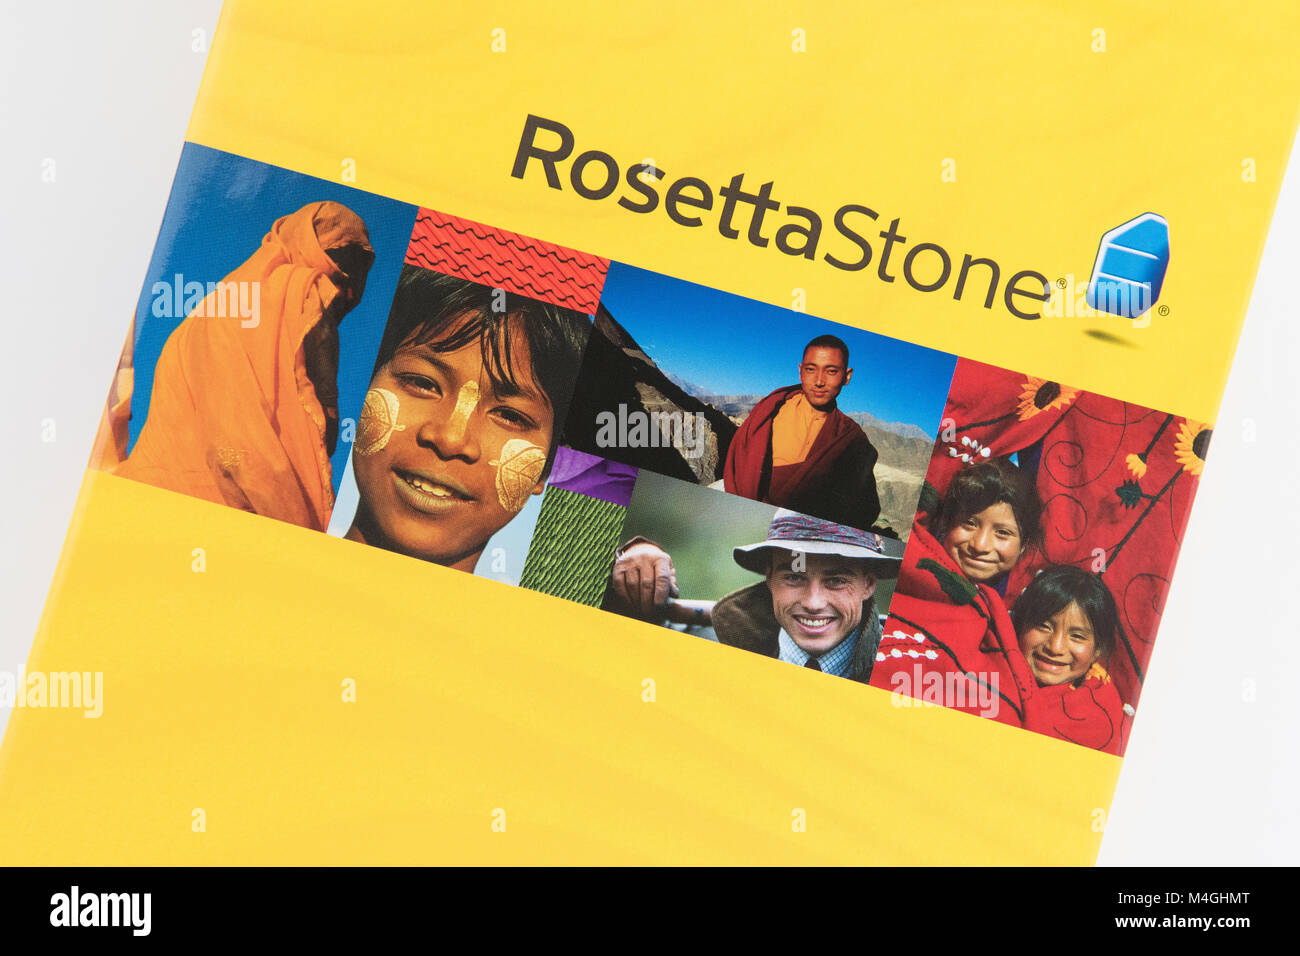 Rosetta Stone aprendizaje de idiomas software del curso Foto de stock